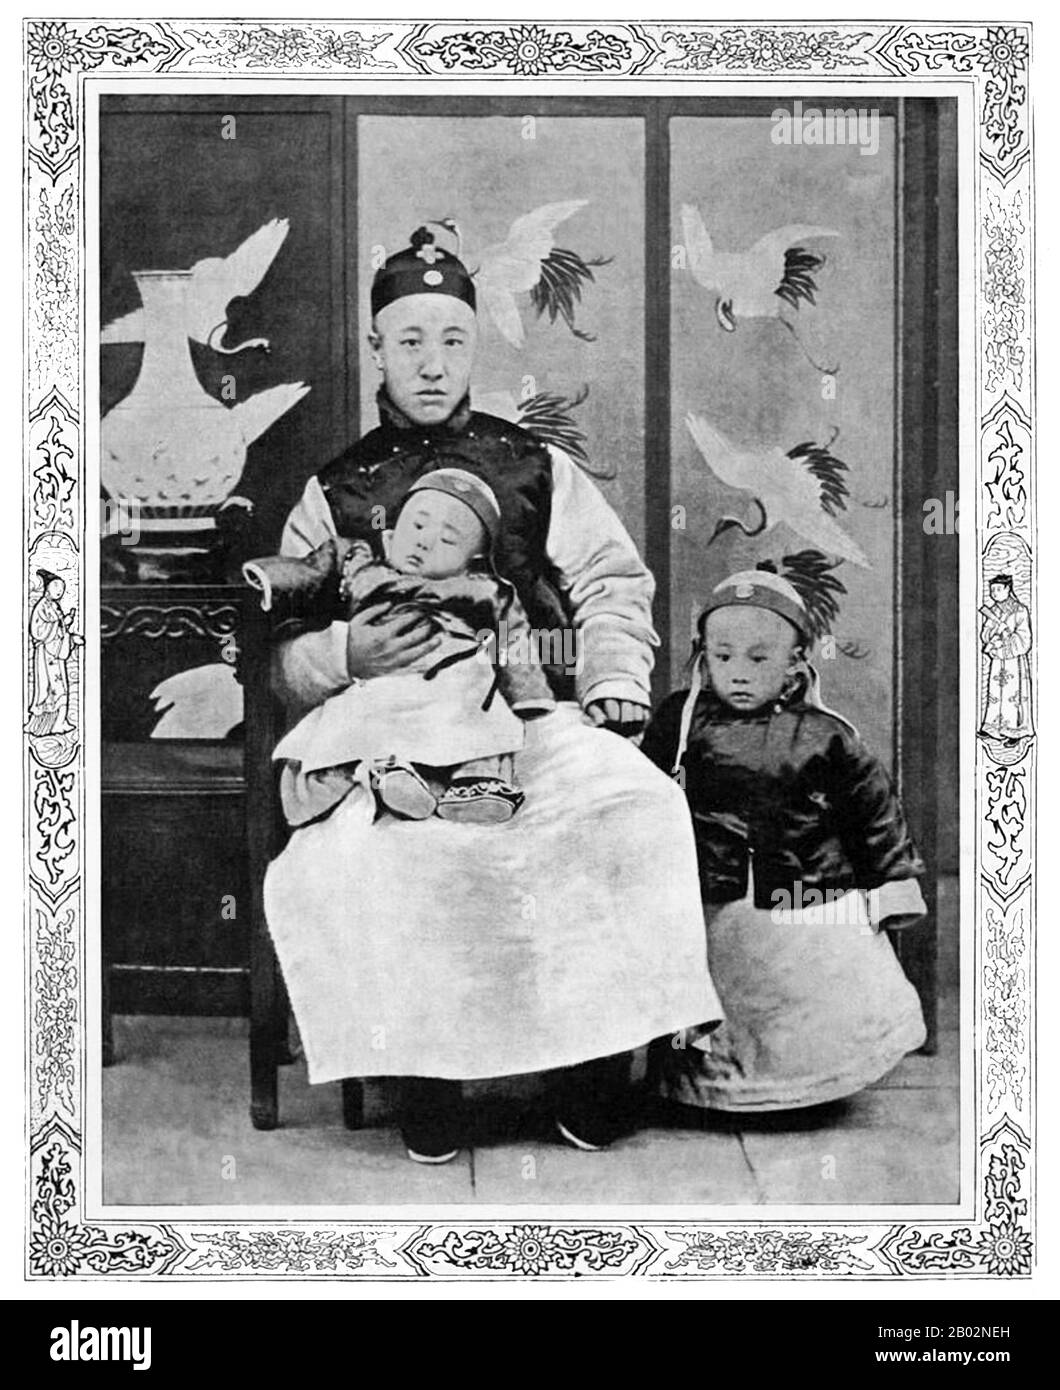 AISIN-Gioro Pu Yi (7 février 1906 – 17 octobre 1967), de la famille dirigeante de Manchu Aisin Gioro, était le dernier empereur de Chine. Il a gouverné en deux périodes entre 1908 et 1917, d'abord comme l'empereur Xuantong de 1908 à 1912, et nominalement comme empereur de marionnettes non régnant pendant douze jours en 1917. Il a été le douzième et dernier membre de la dynastie Qing à régner sur la Chine proprement dite. Banque D'Images